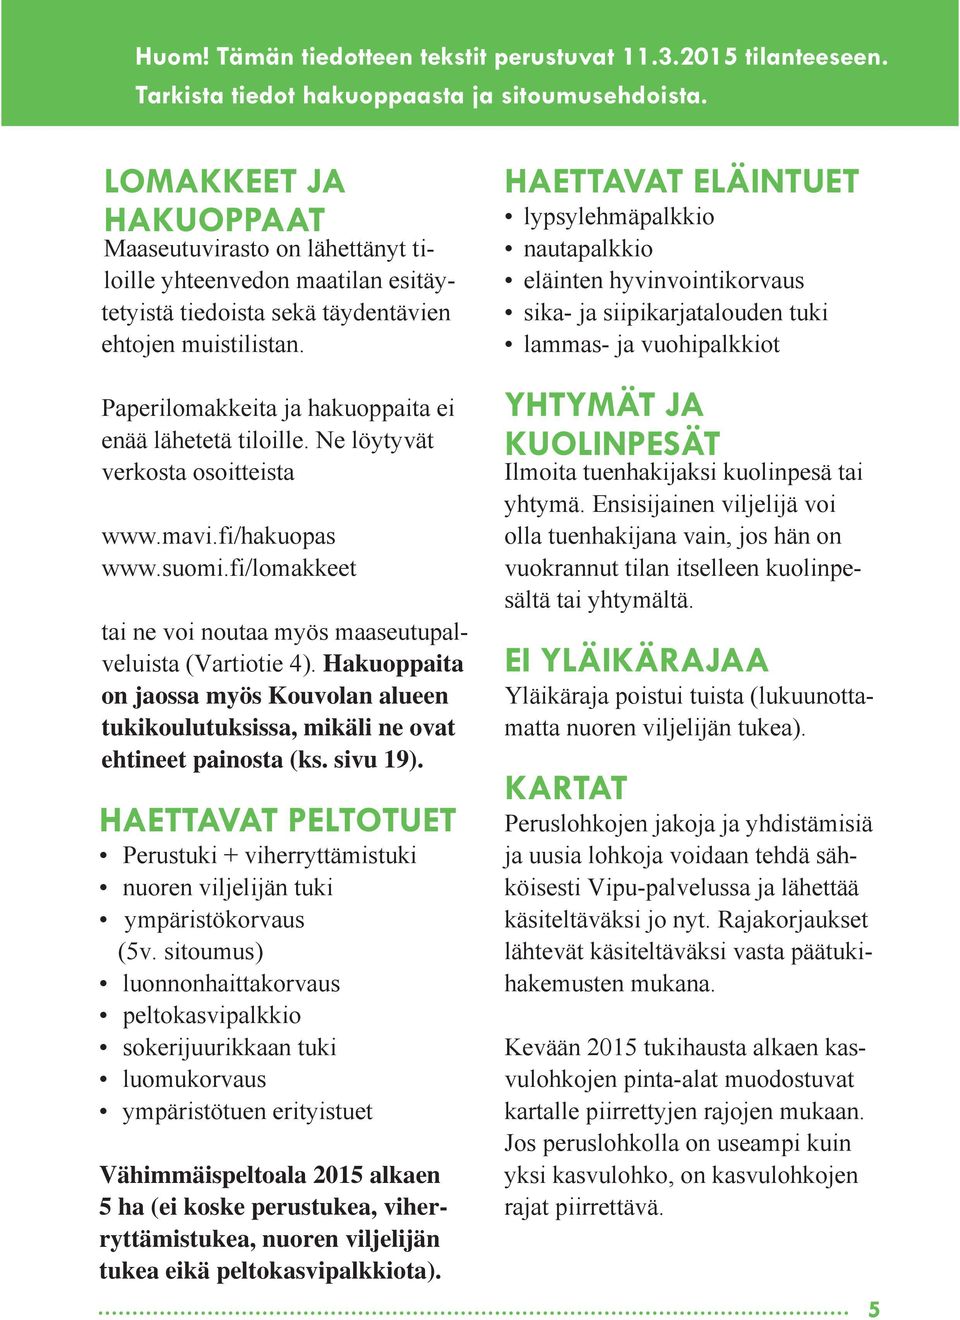 Paperilomakkeita ja hakuoppaita ei enää lähetetä tiloille. Ne löytyvät verkosta osoitteista www.mavi.fi/hakuopas www.suomi.fi/lomakkeet tai ne voi noutaa myös maaseutupalveluista (Vartiotie 4).